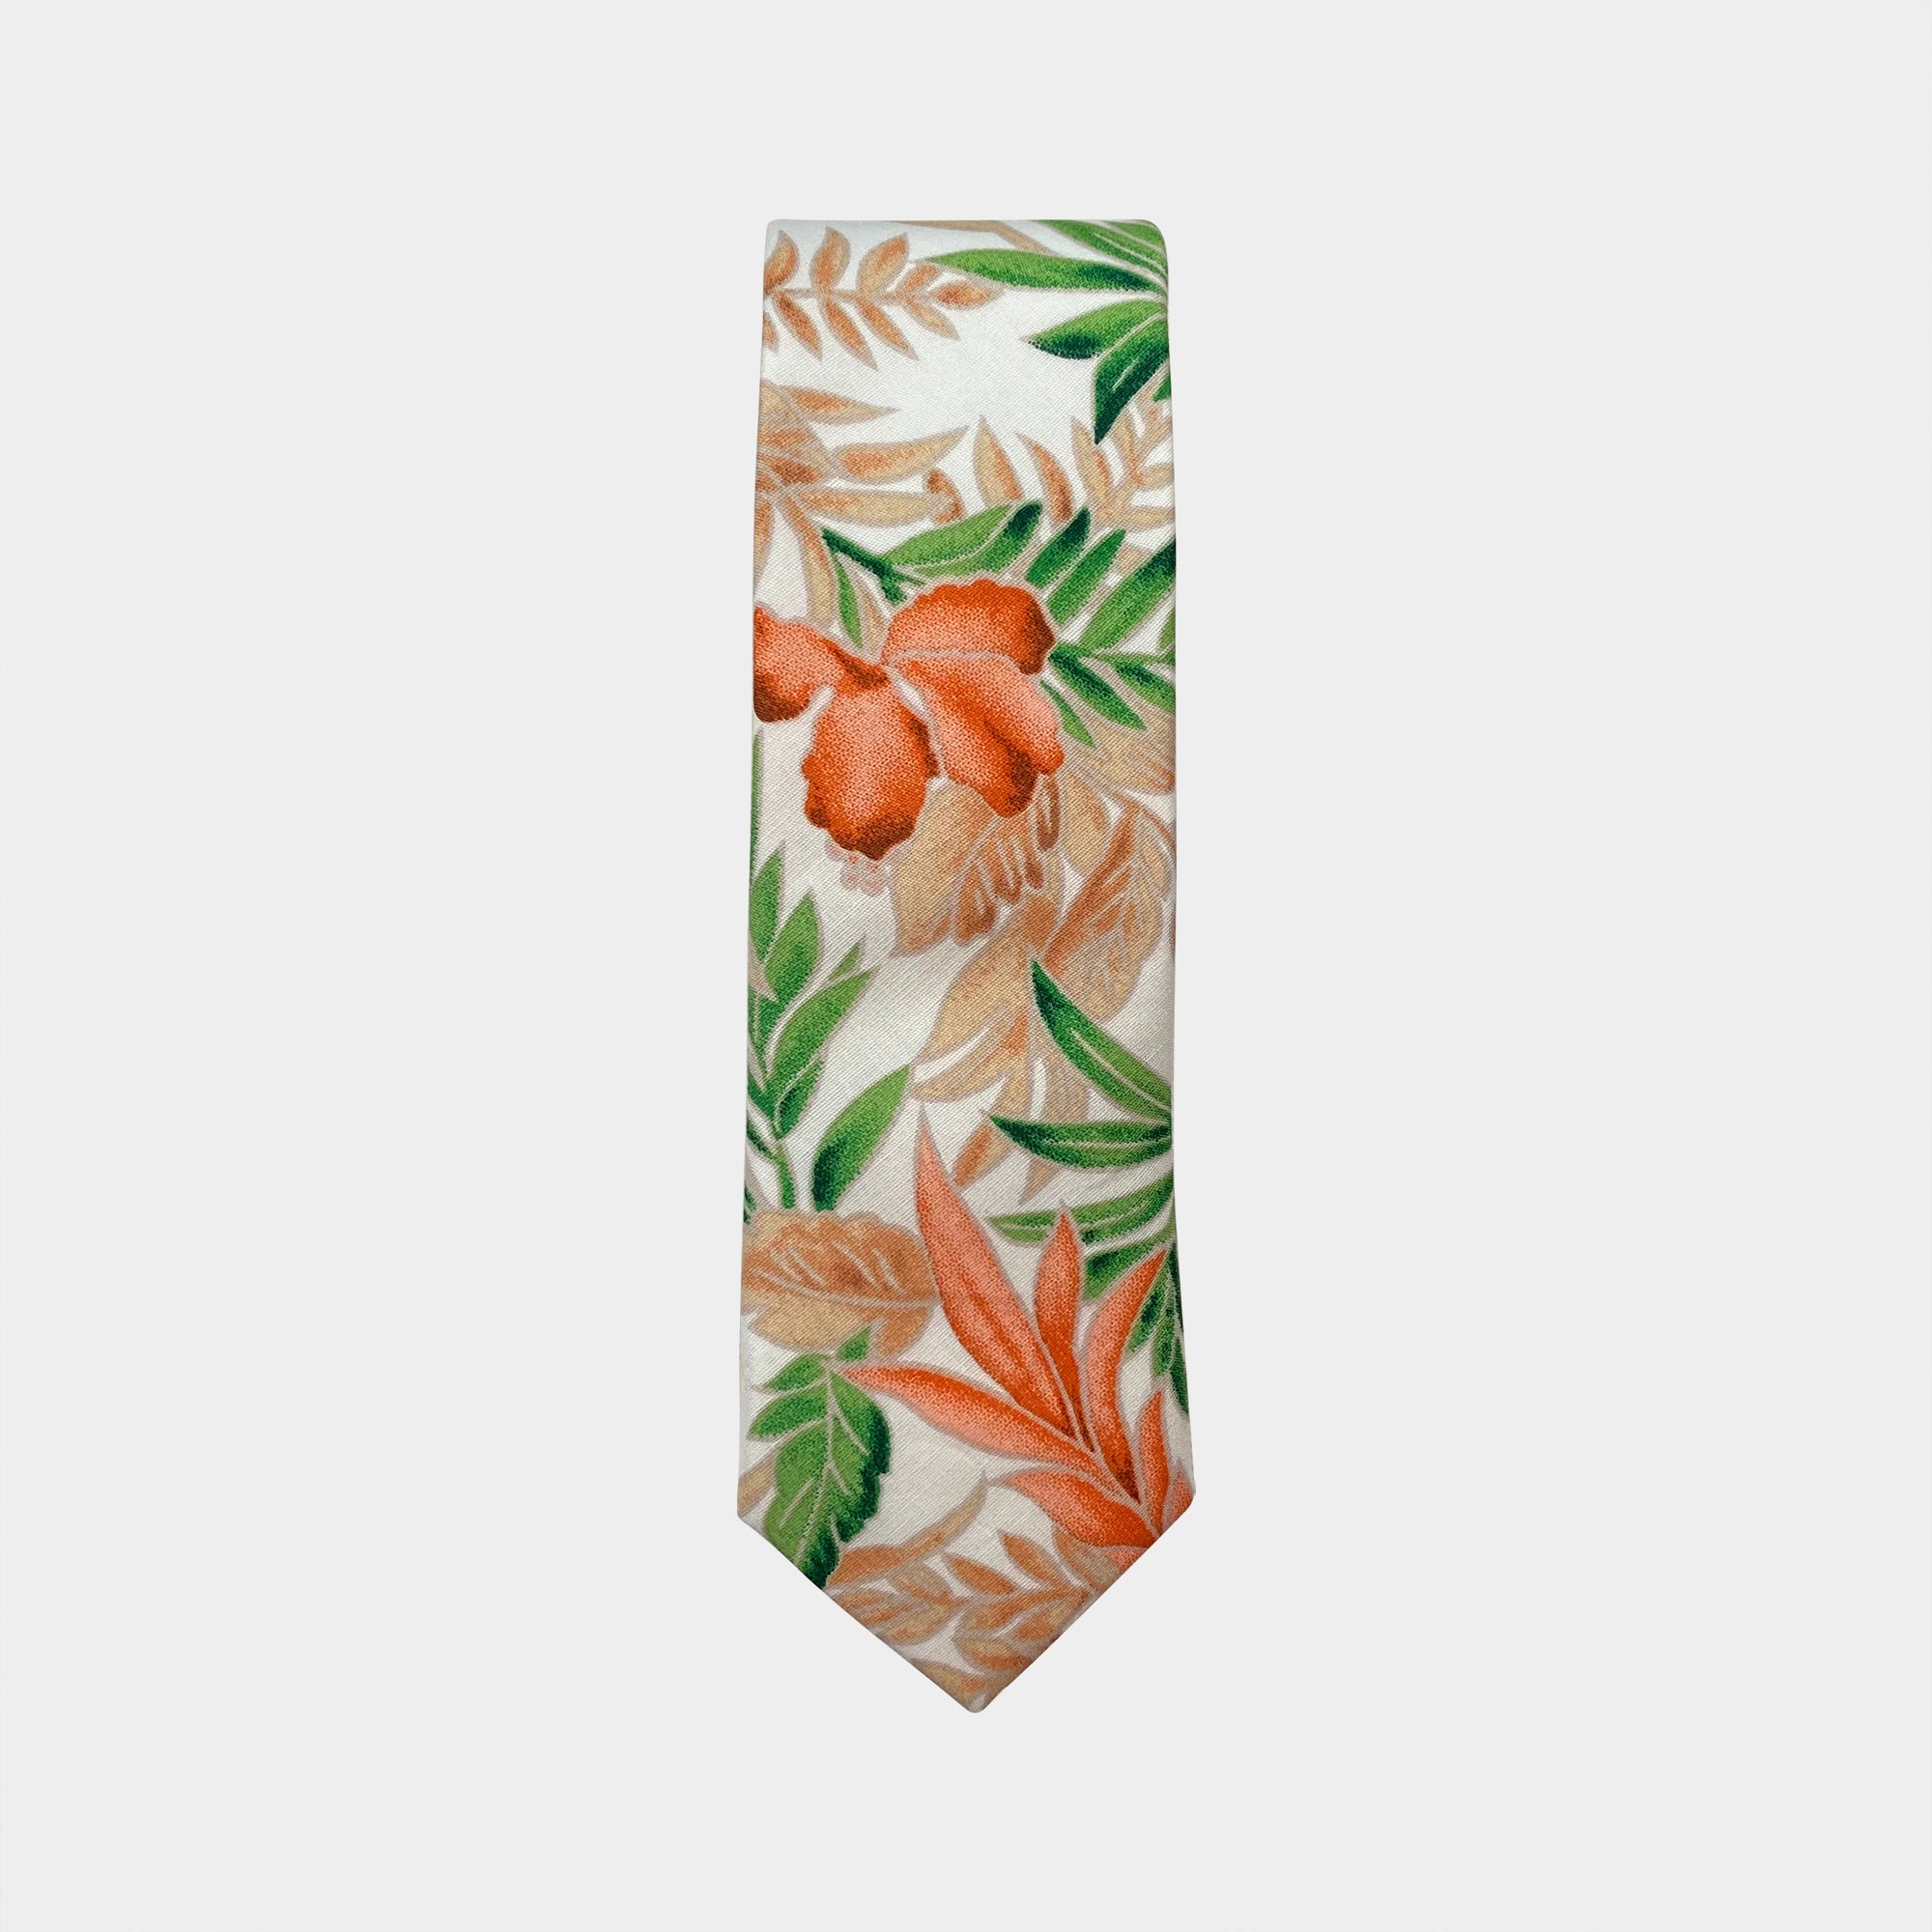 KODY - Men's Tie